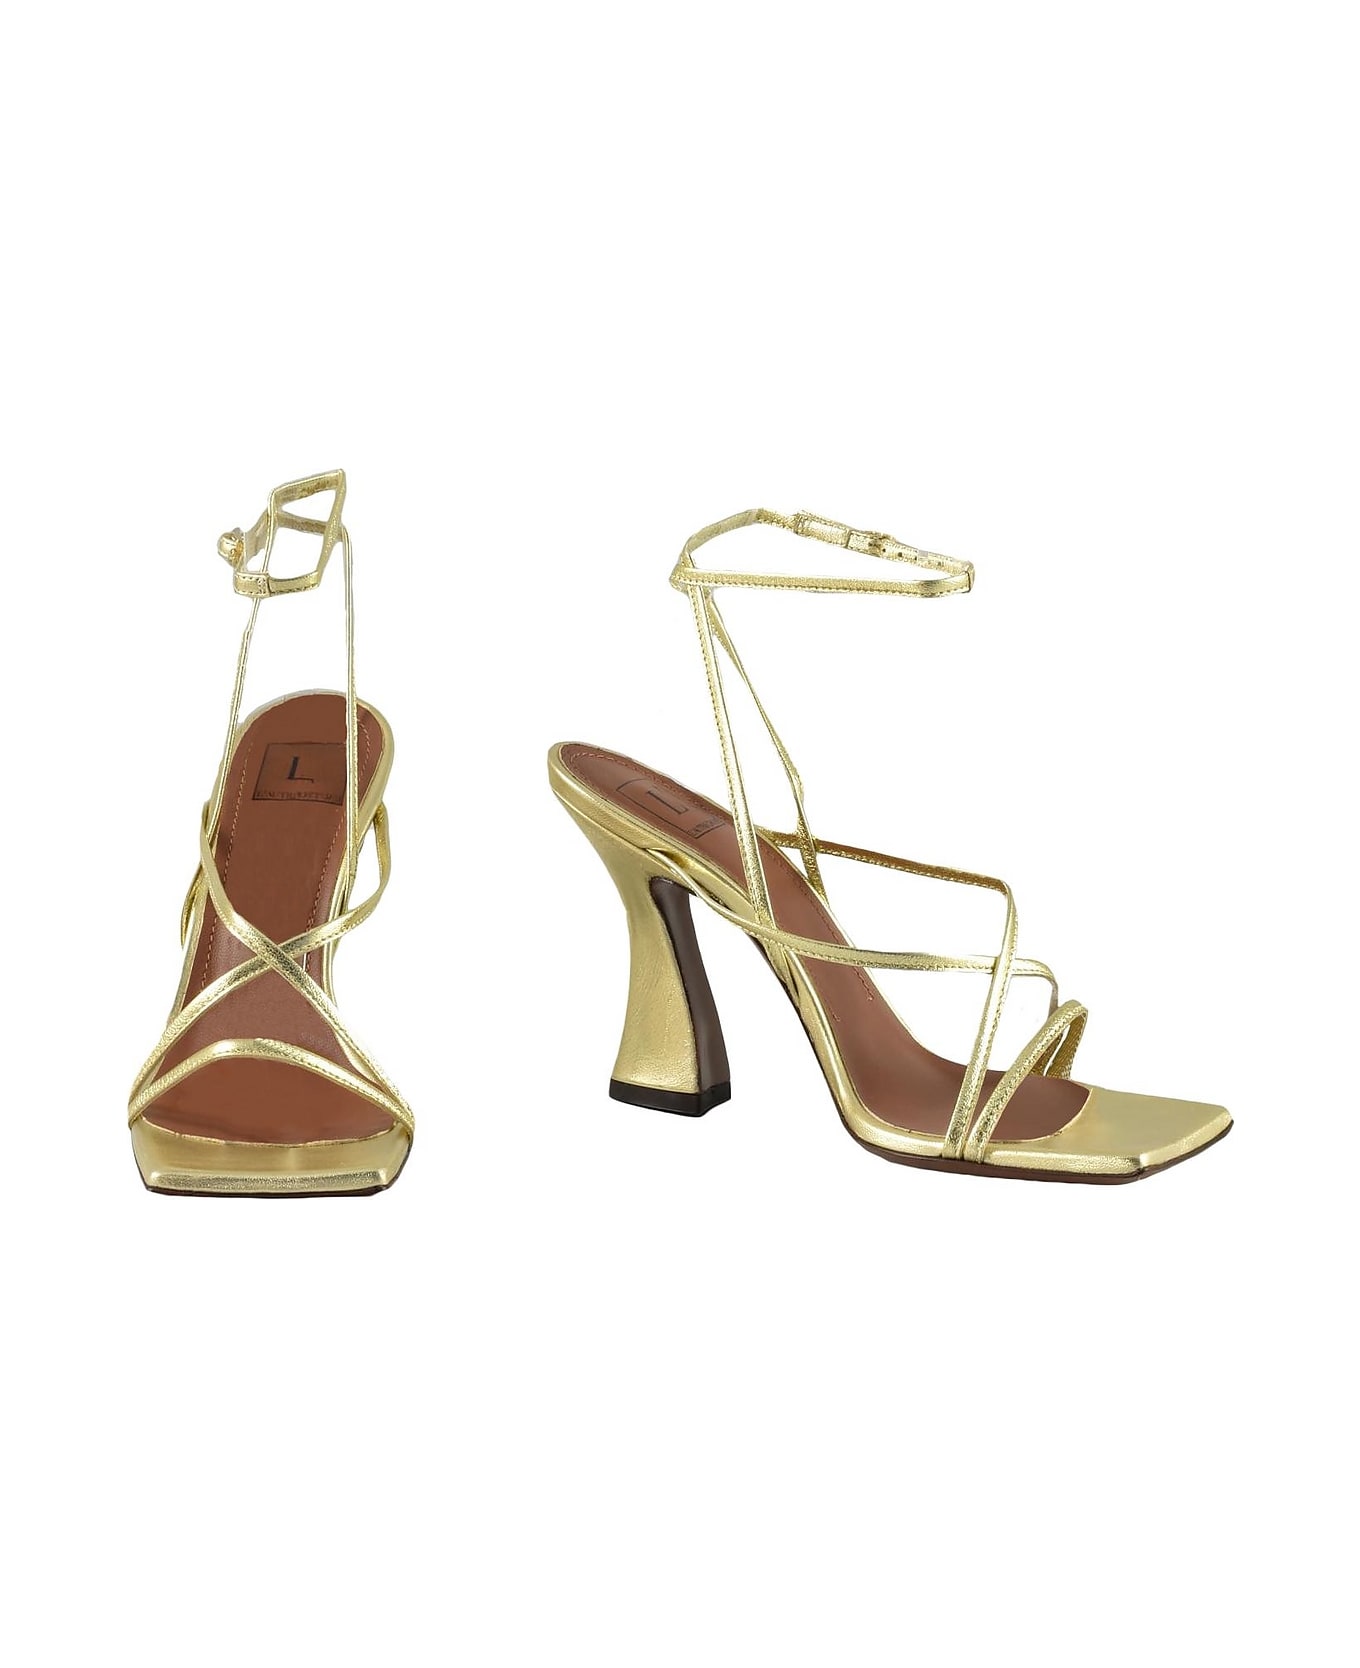 L'Autre Chose Women's Gold Sandals - Gold